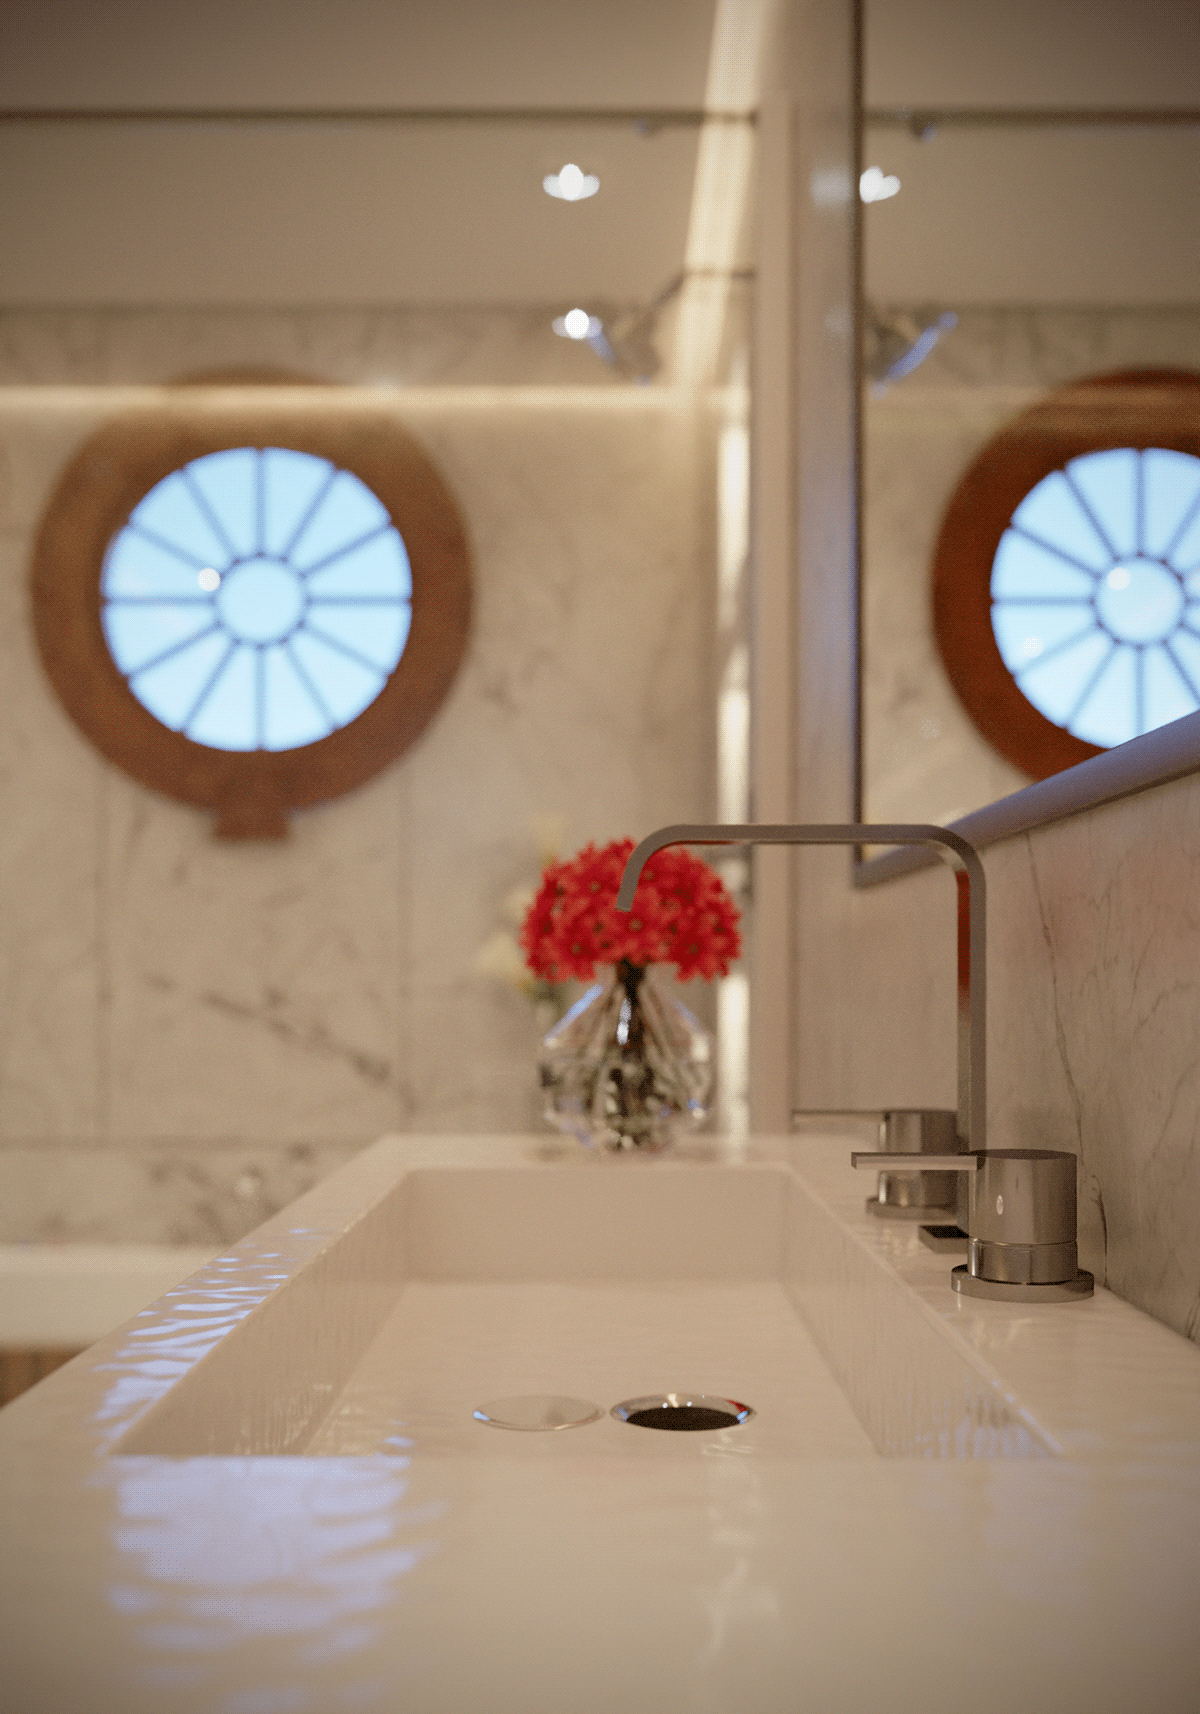 bathroom design visualization interior design  modern architecture archviz Render bathroom interior 3ds max CGI